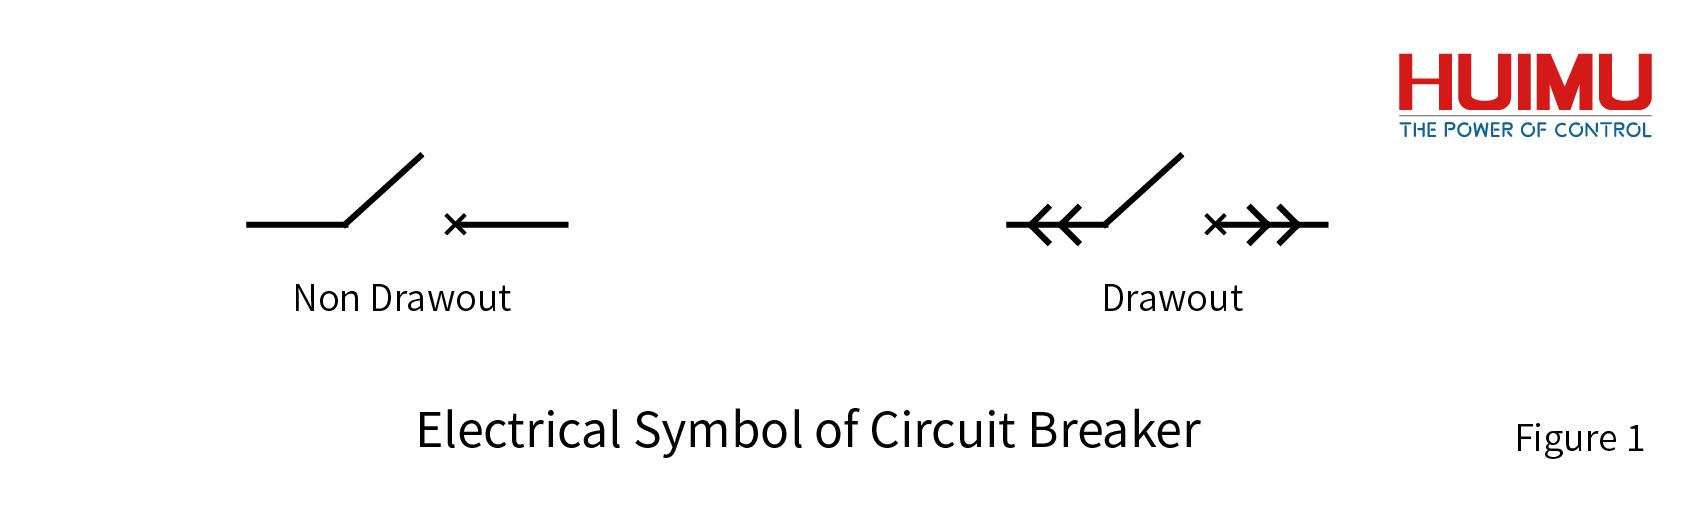 Electrical Symbol of Circuit Breaker